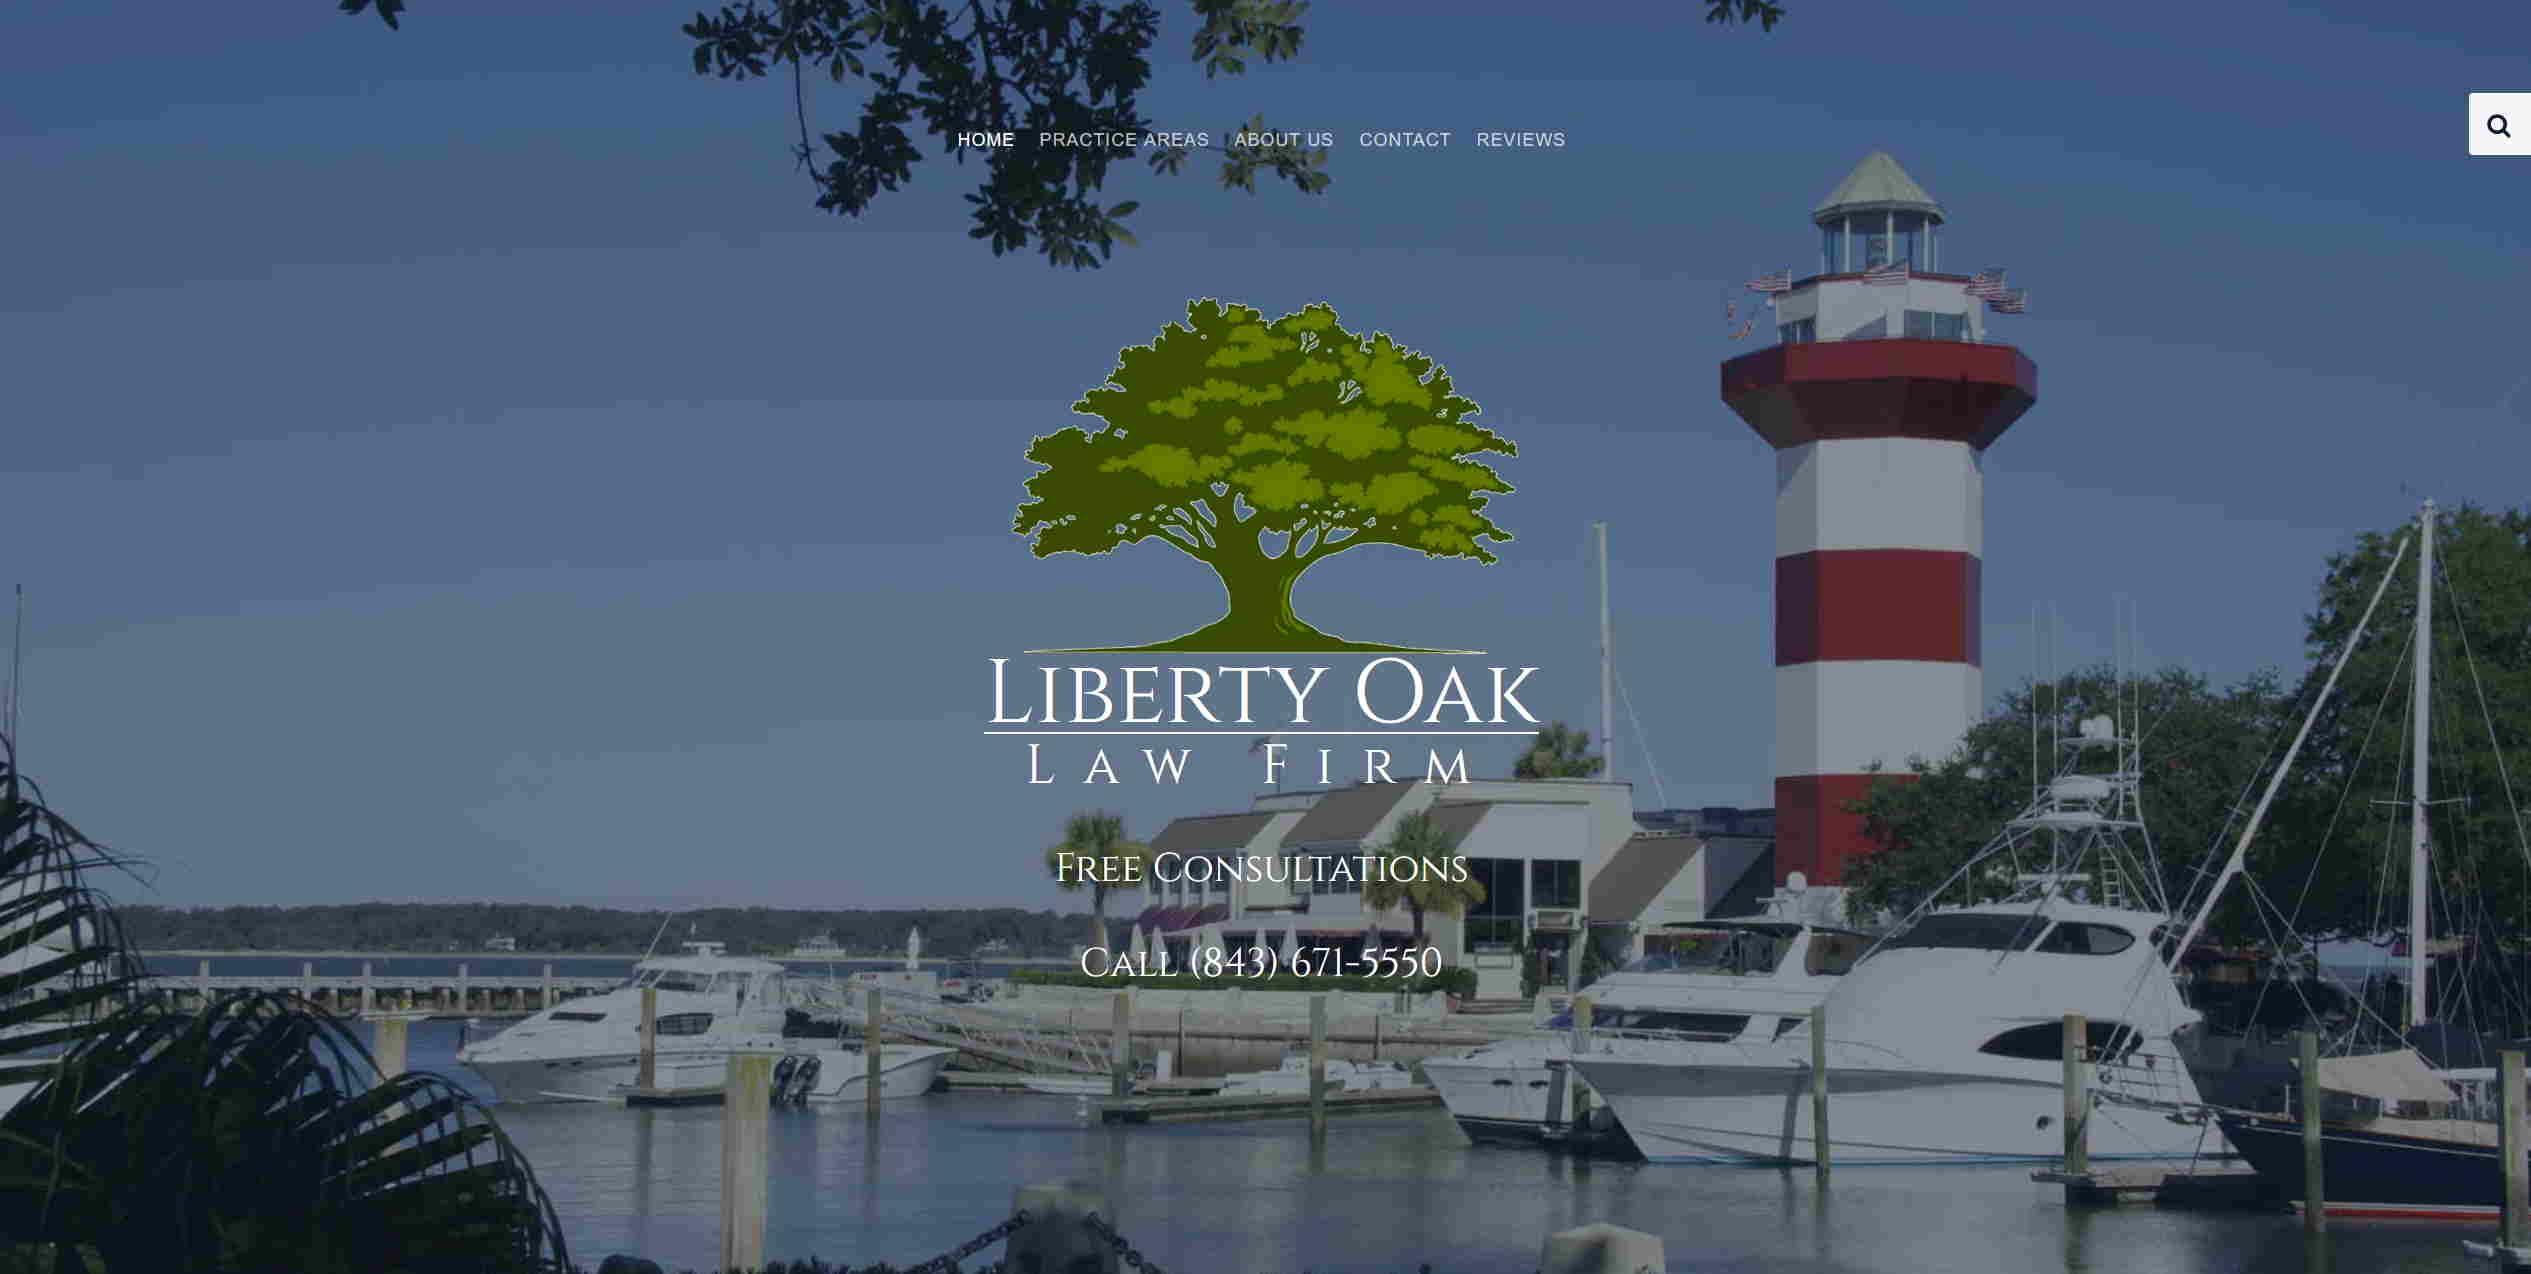 Lilberty Oak Law Firm